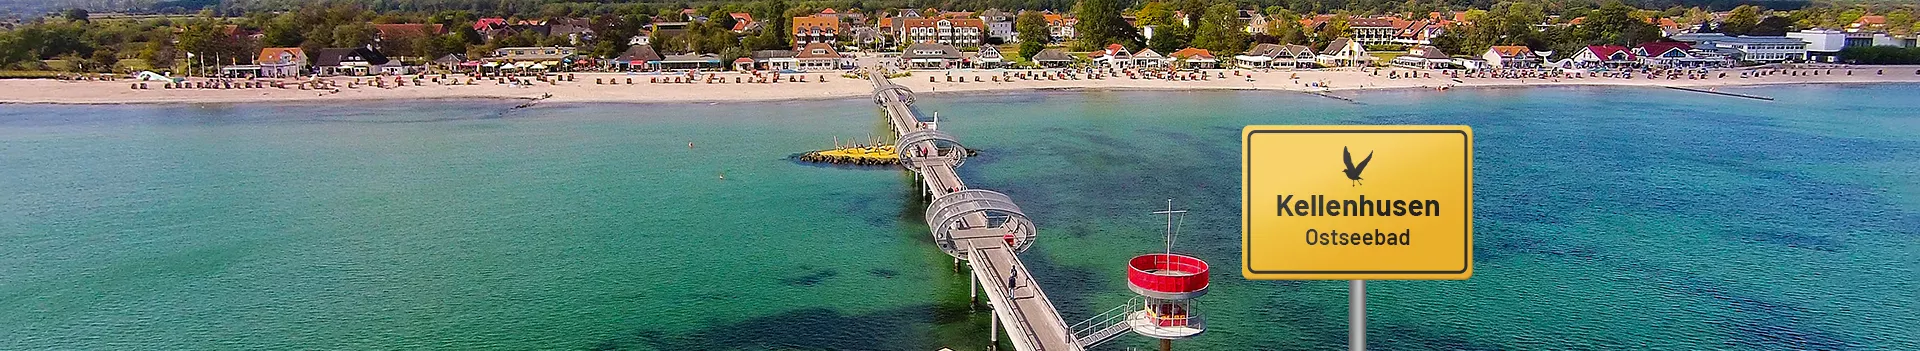 Ostseebad Kellenhusen – Seebrücke und Strand aus der Vogelperspektive